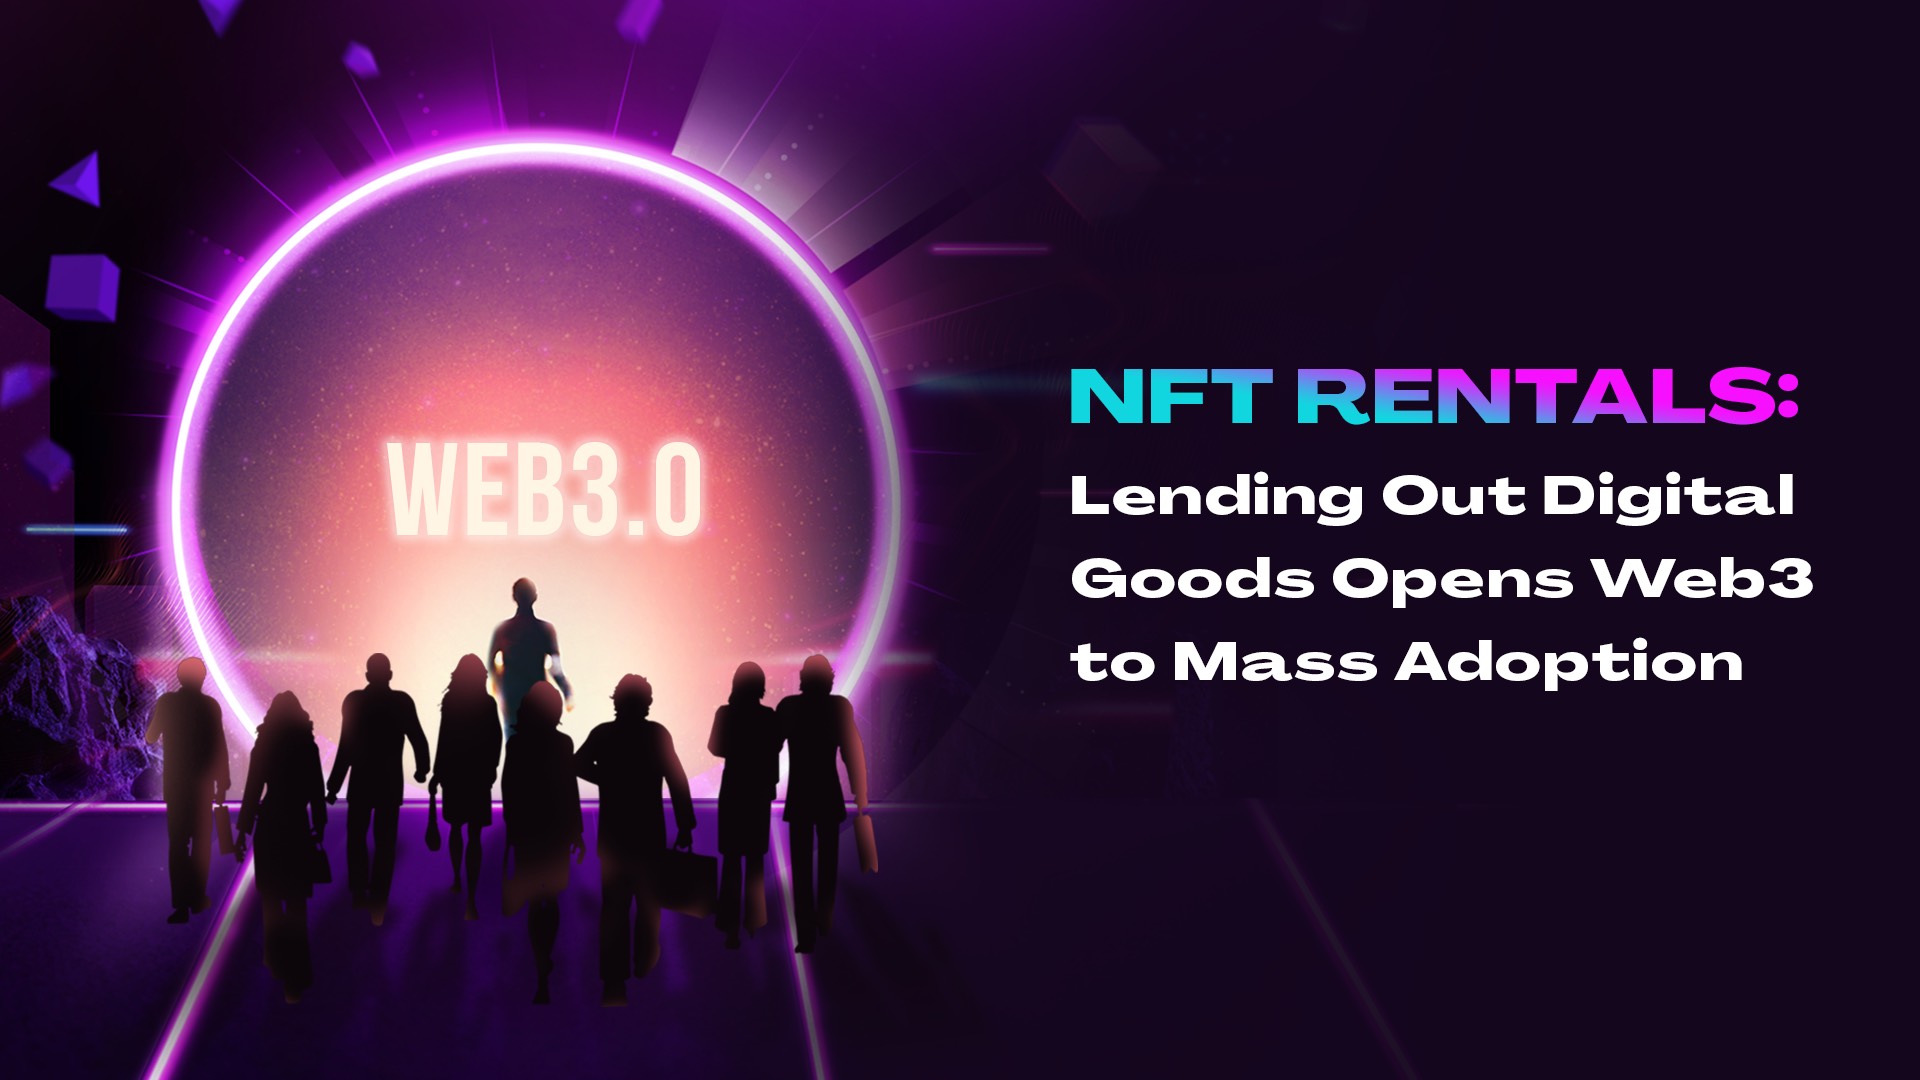 NFT Rentals: Lending Out Digital Goods Opens Web3 to Mass Adoption